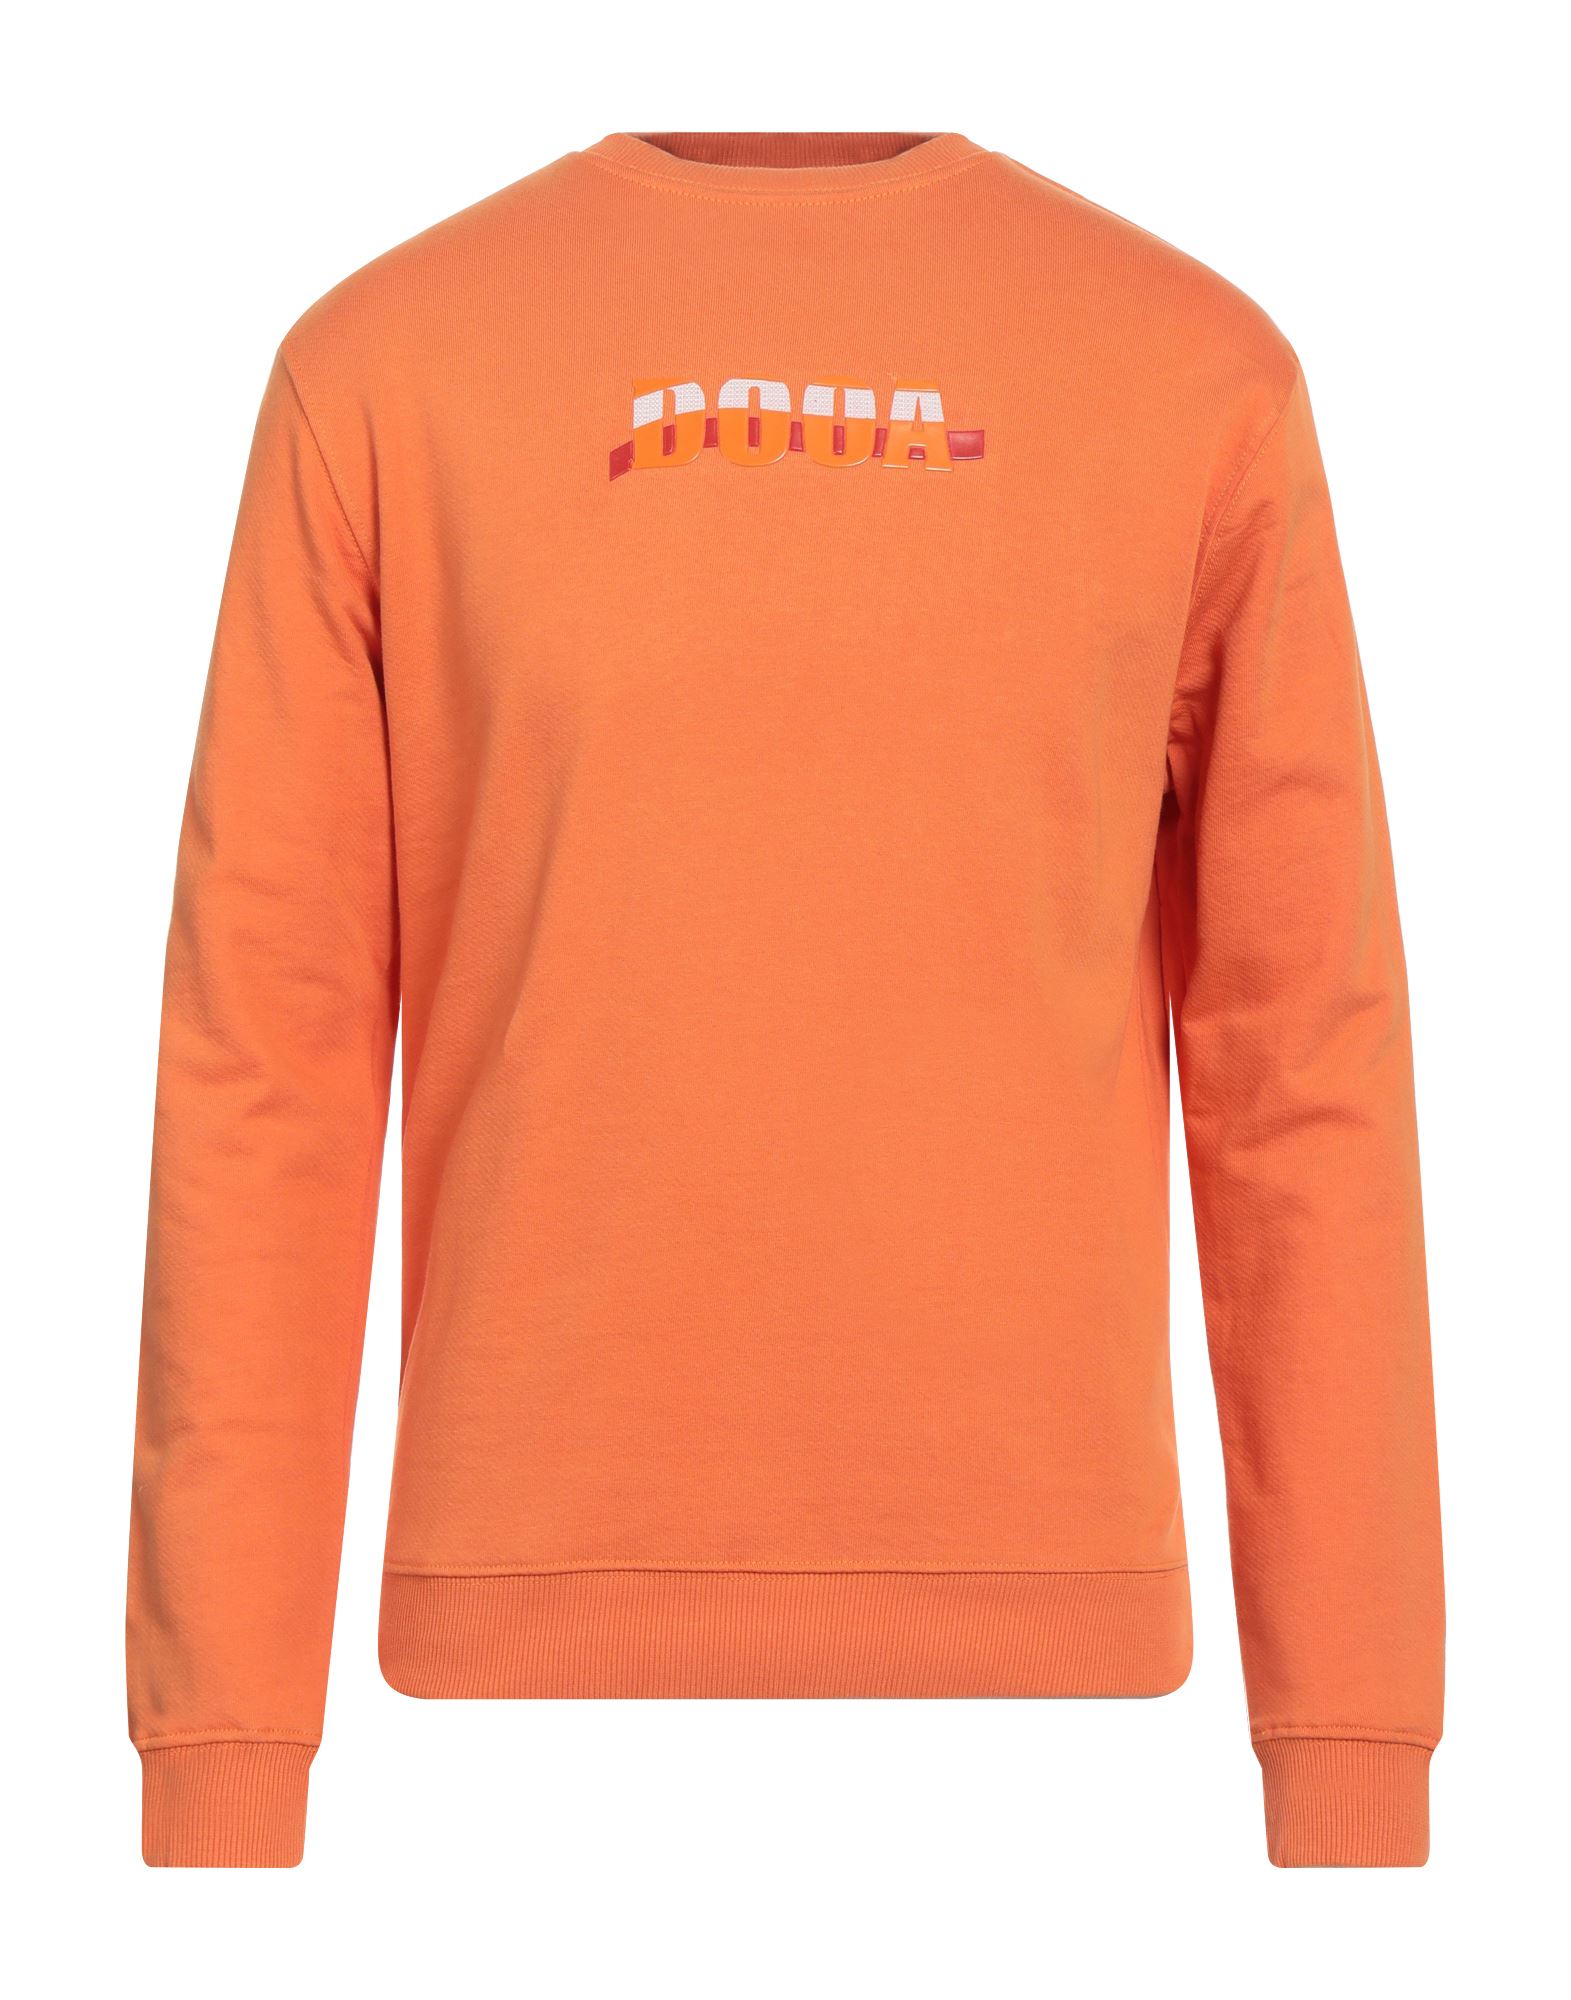 DOOA Sweatshirt Herren Orange von DOOA